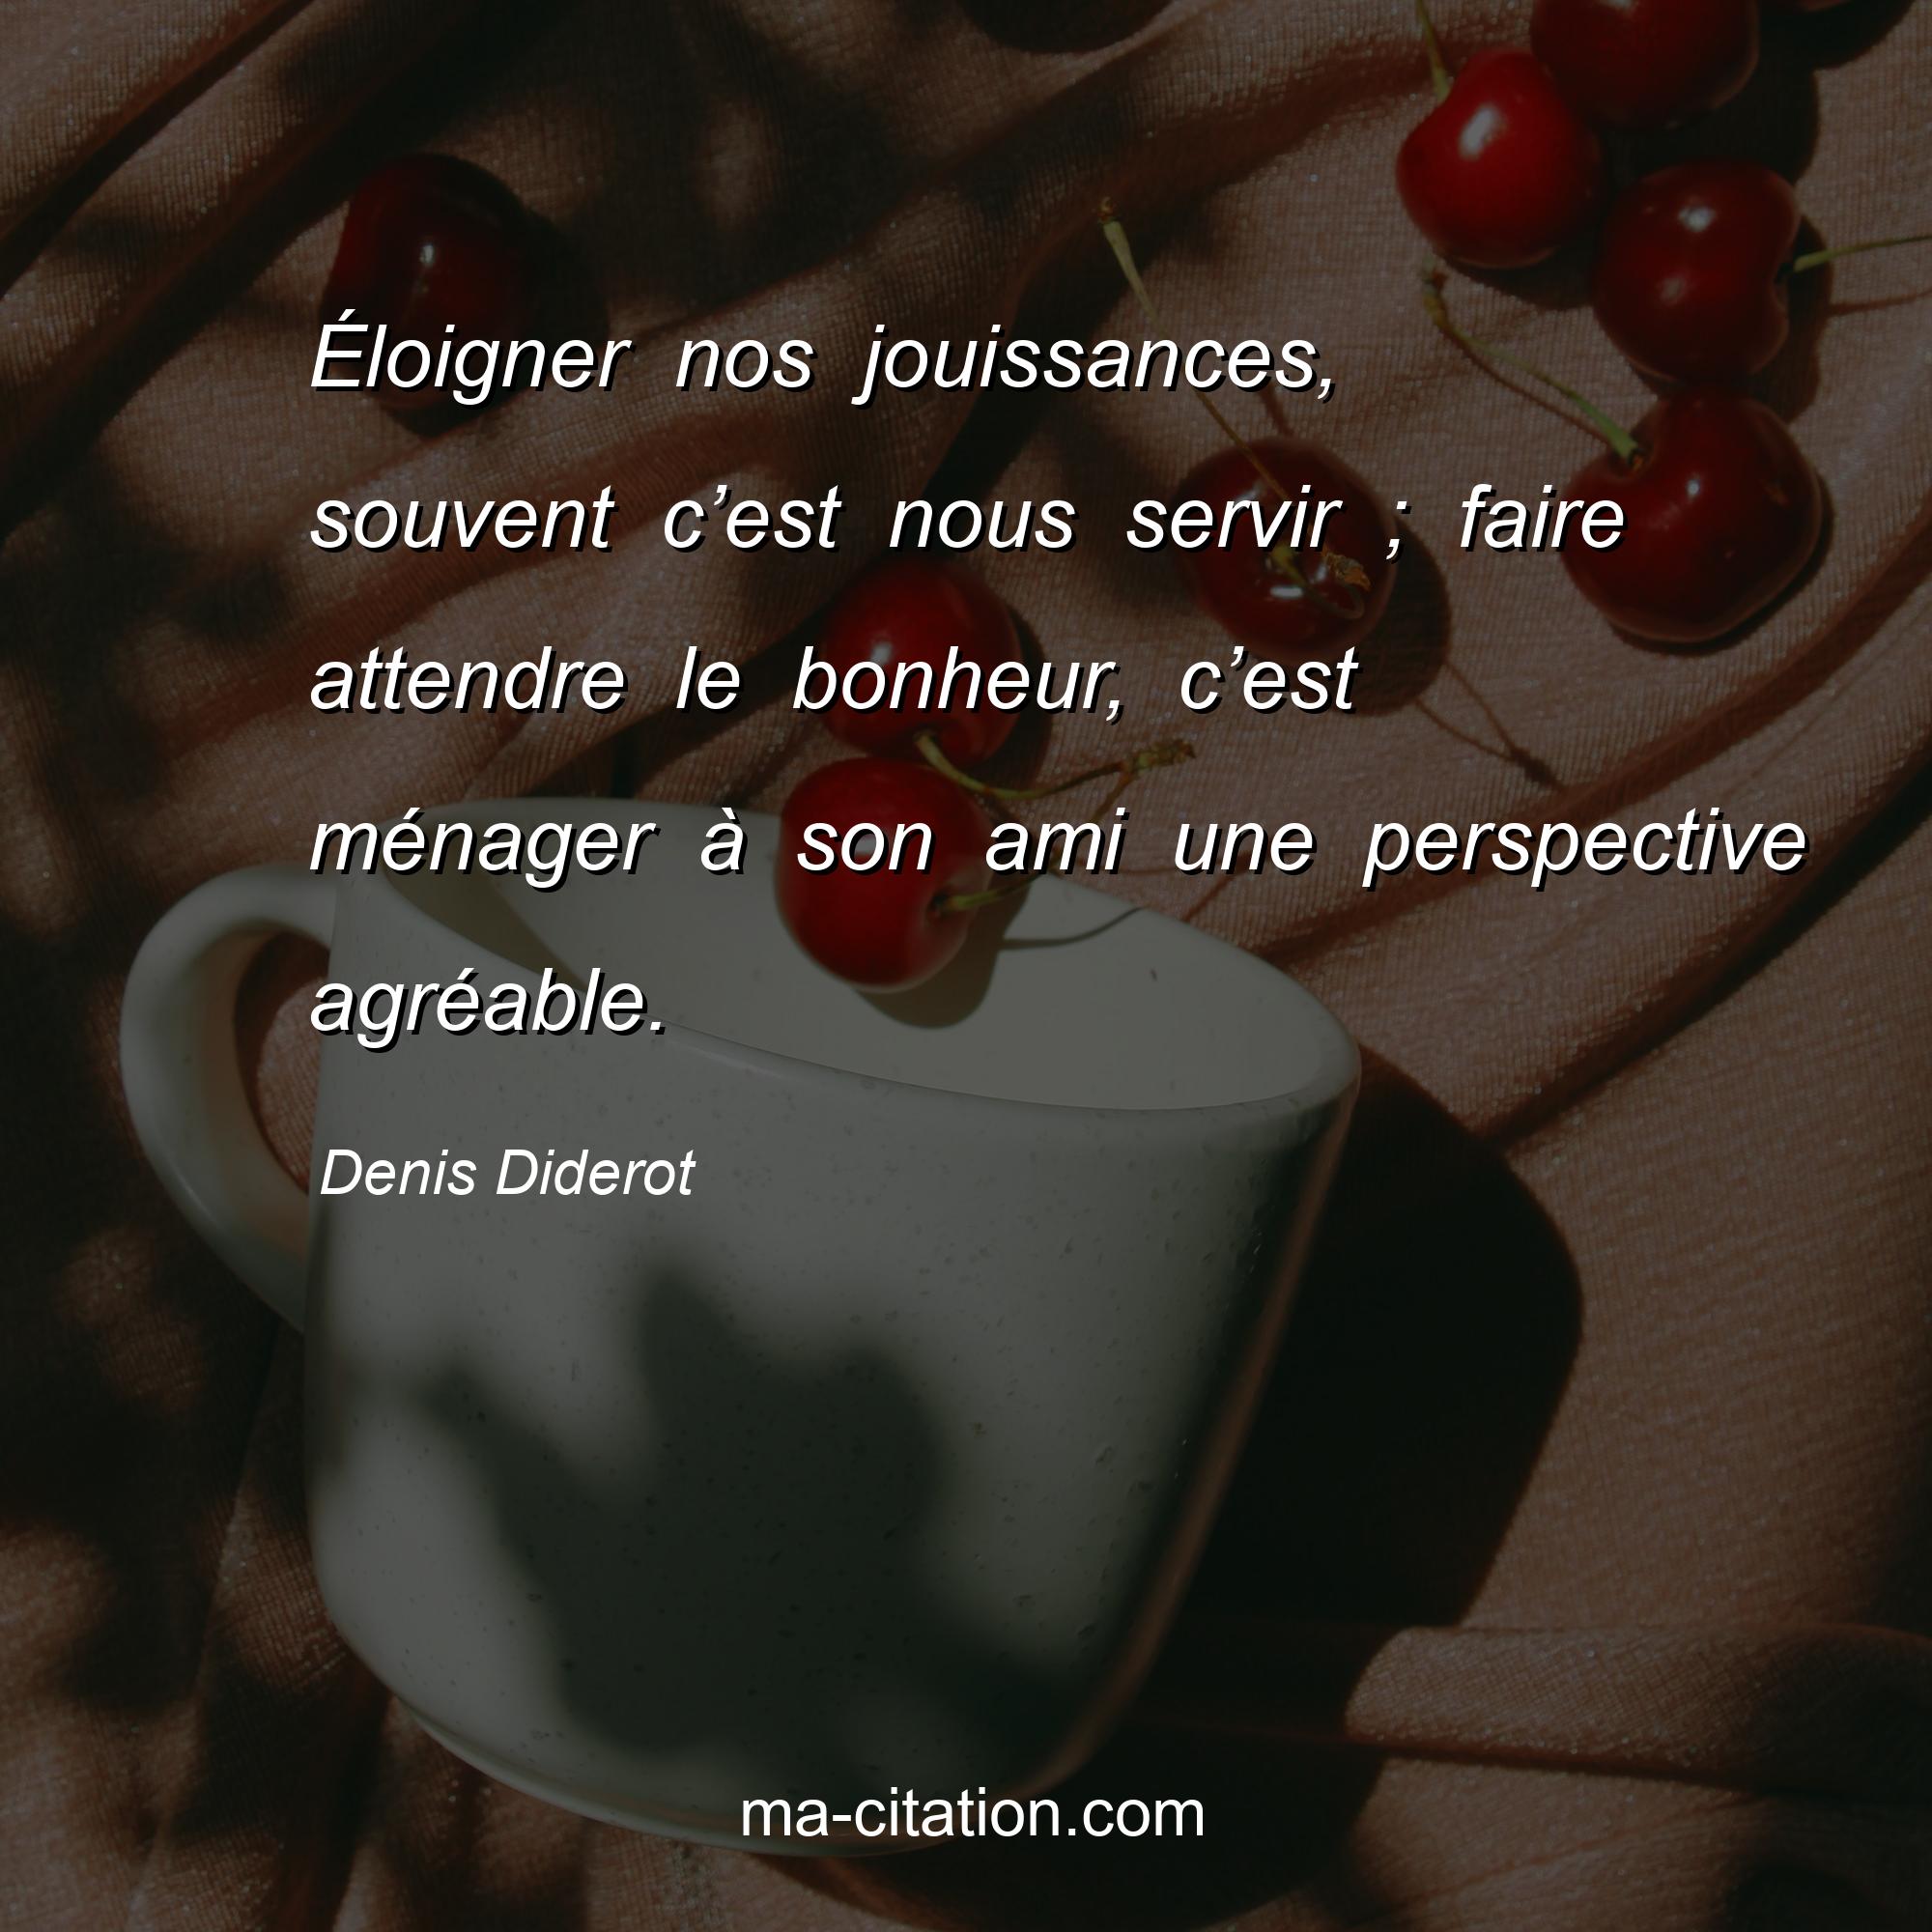 Denis Diderot : Éloigner nos jouissances, souvent c’est nous servir ; faire attendre le bonheur, c’est ménager à son ami une perspective agréable.